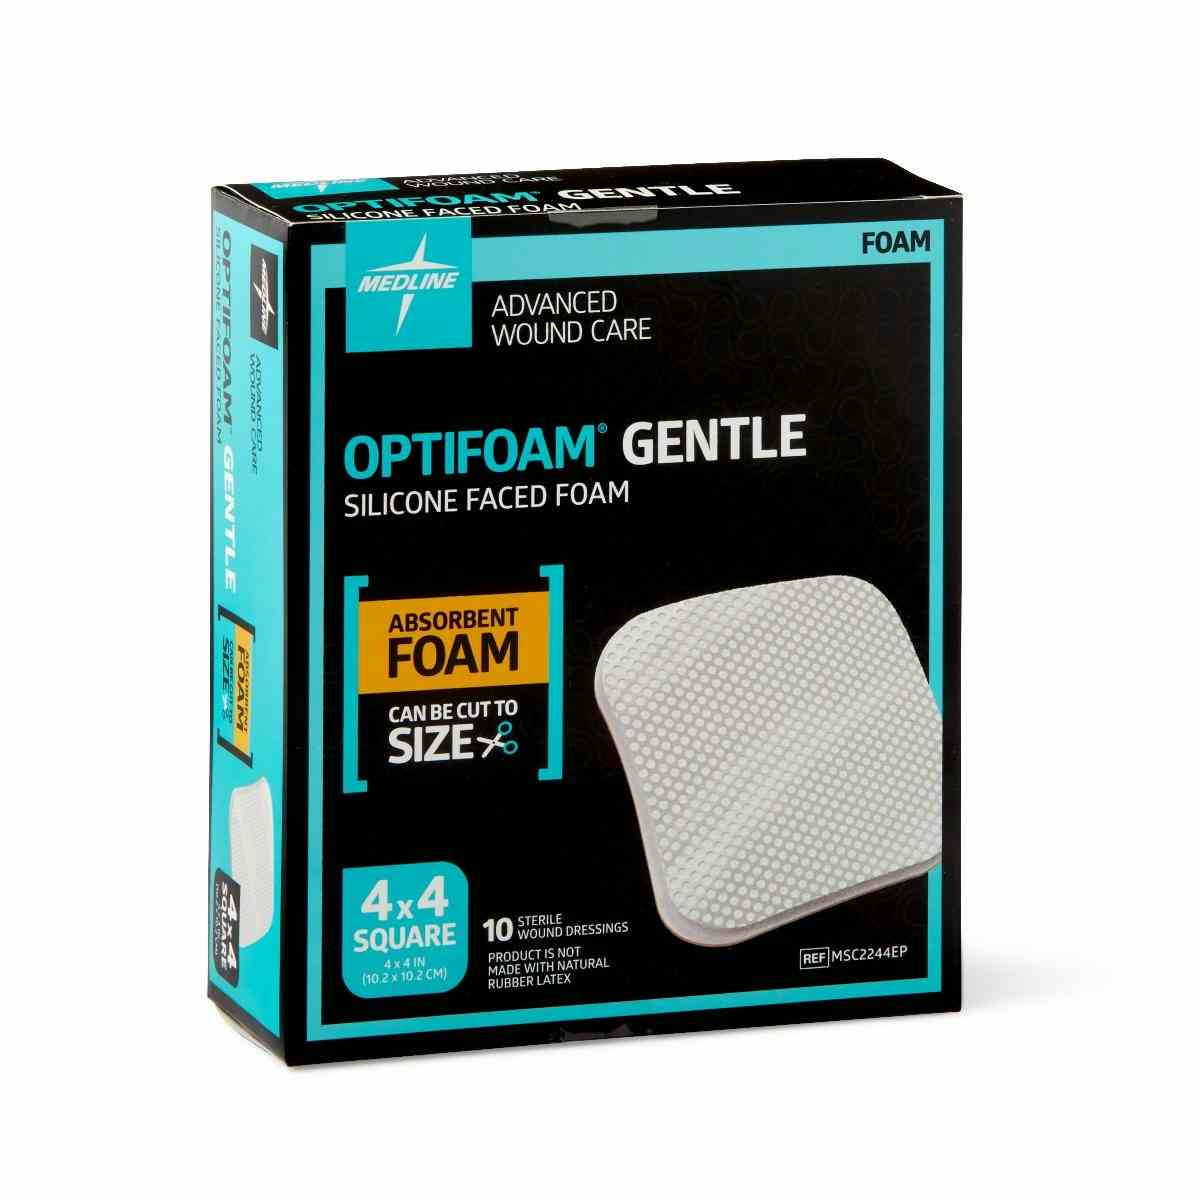 Medline Optifoam Gentle Silicone Faced Foam Dressing, MSC2244EPZ, 4" X 4" - Box of 10